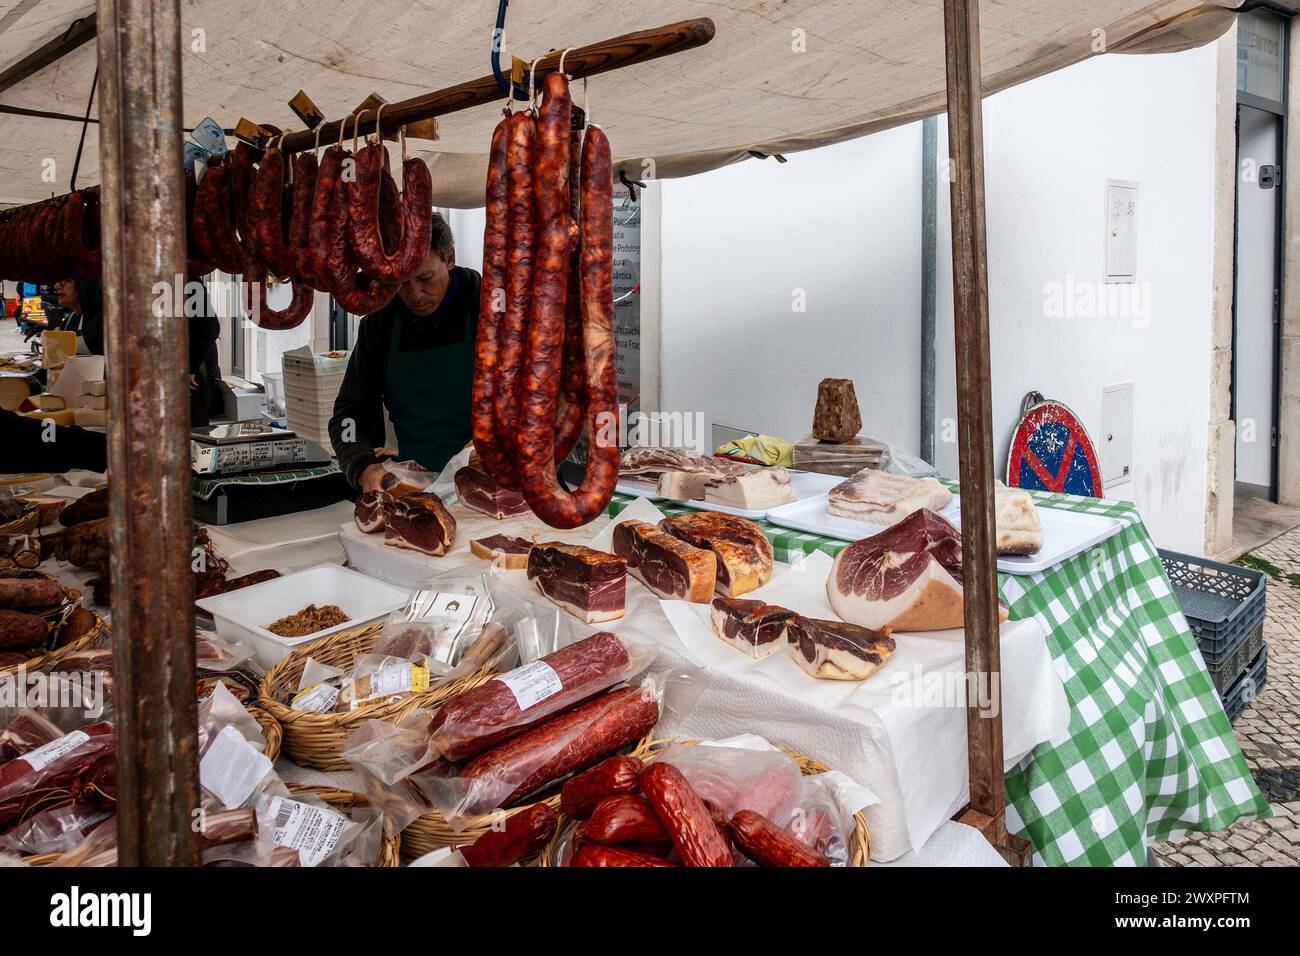 Un vendeur se tient derrière un étal orné d'un éventail de saucisses et de charcuteries, à Loule, au Portugal. Banque D'Images